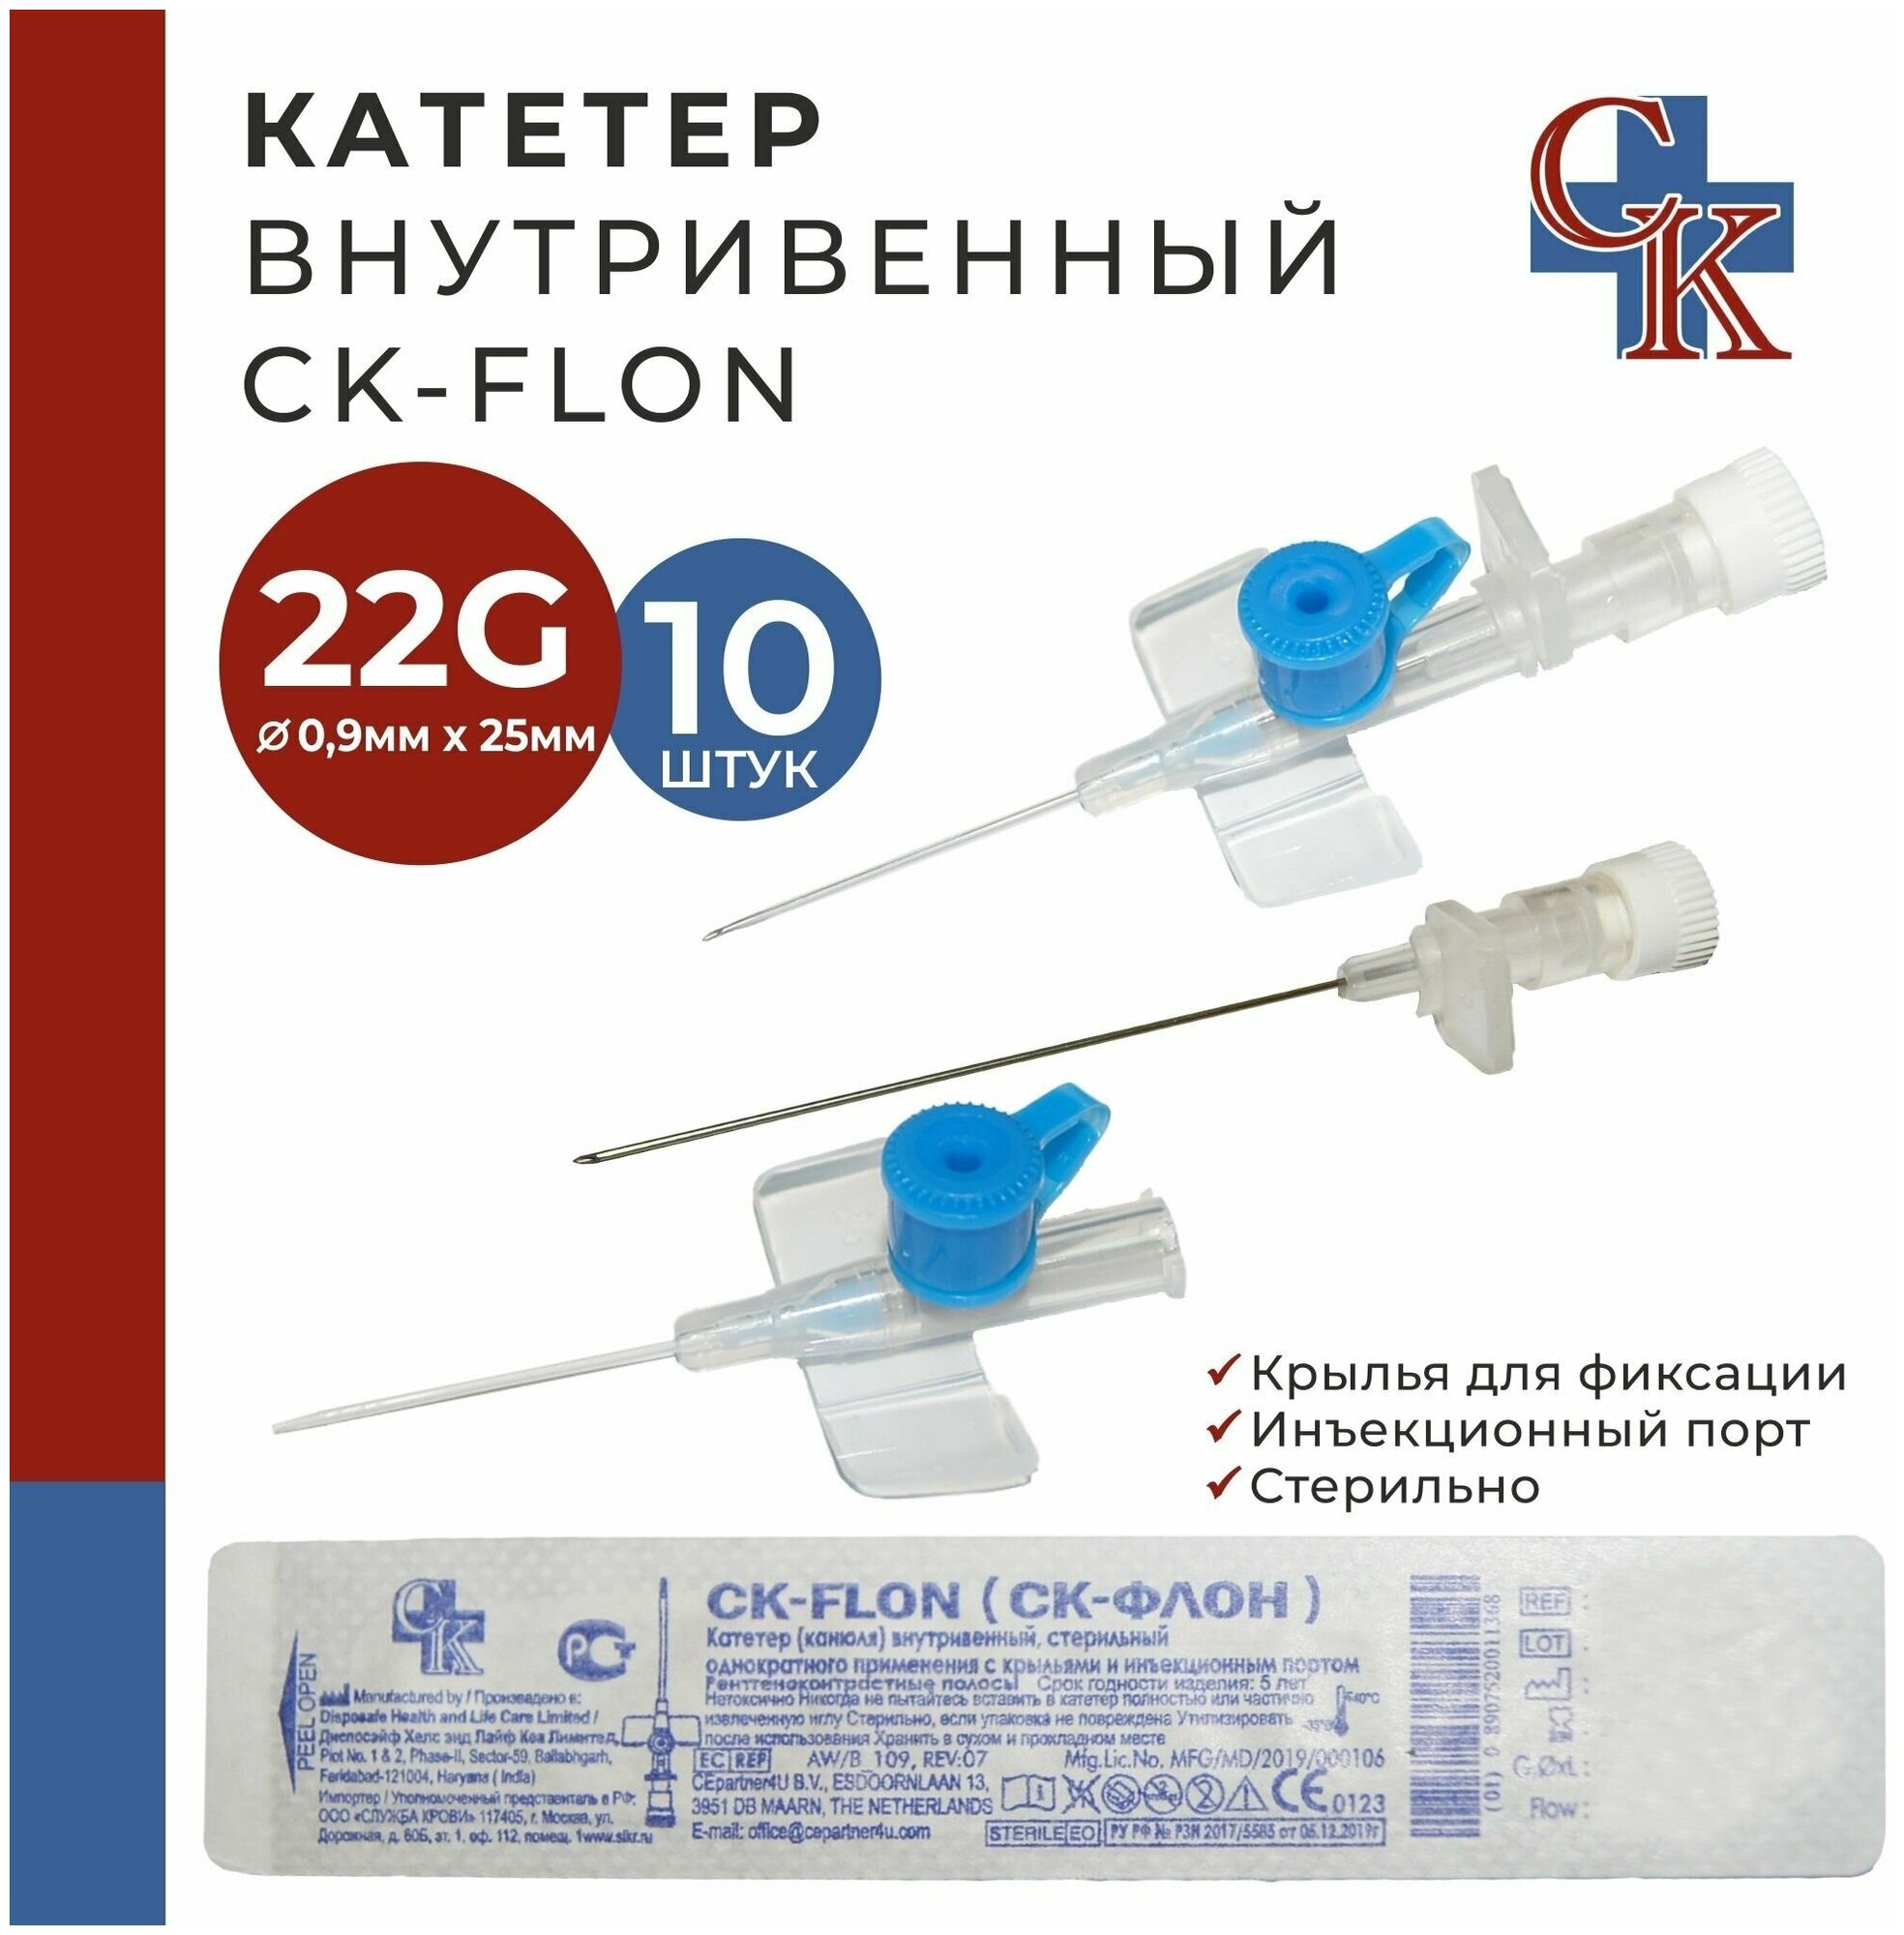 CK-FLON